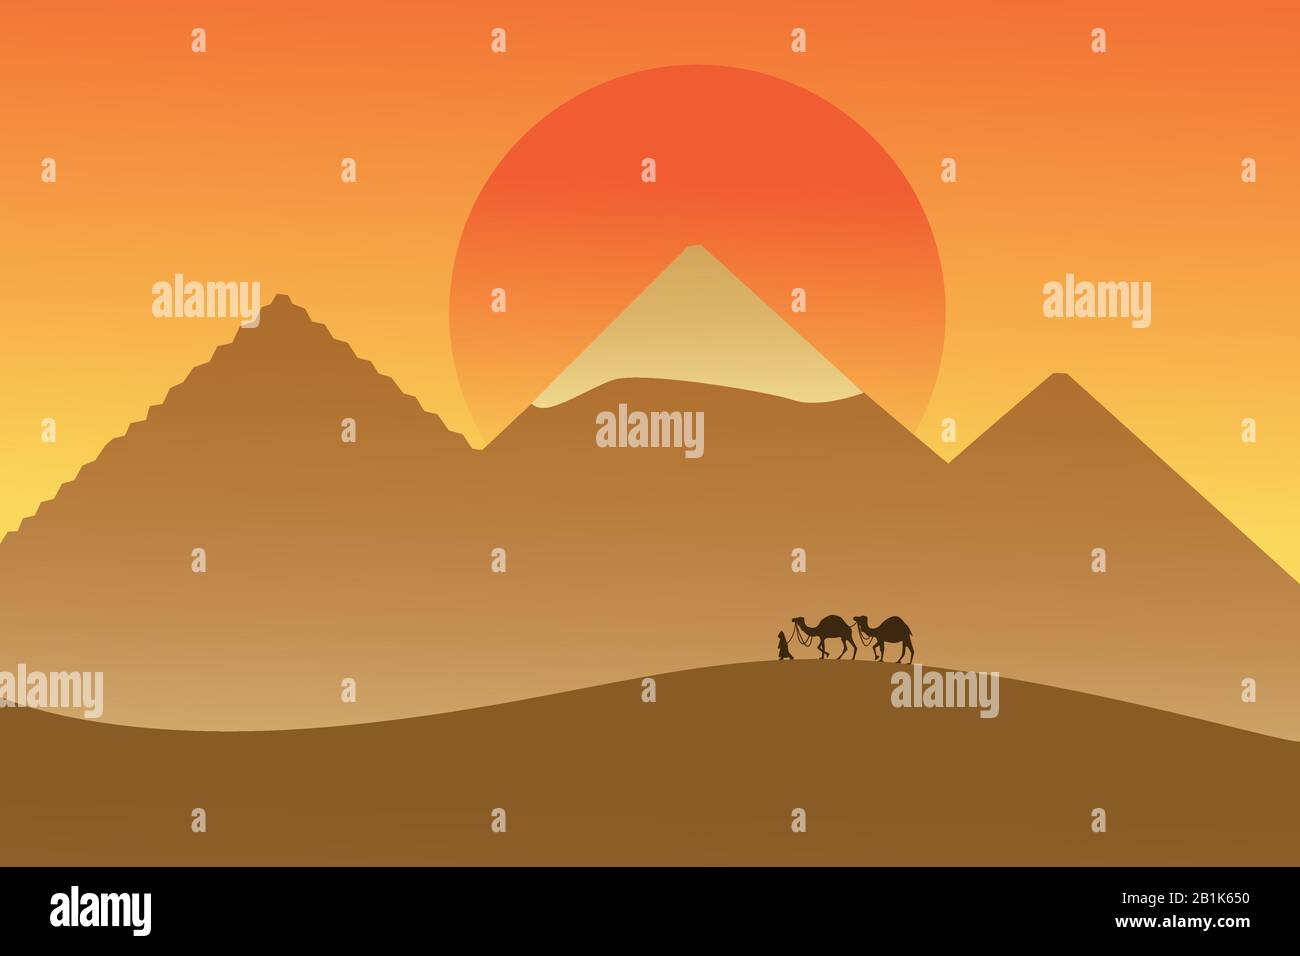 Caravane dans le désert à l'arrière-plan des pyramides et du soleil. Illustration vectorielle dessinée à la main moderne, style plat. Bedouin marchant avec deux chameaux dans le désert, et Illustration de Vecteur